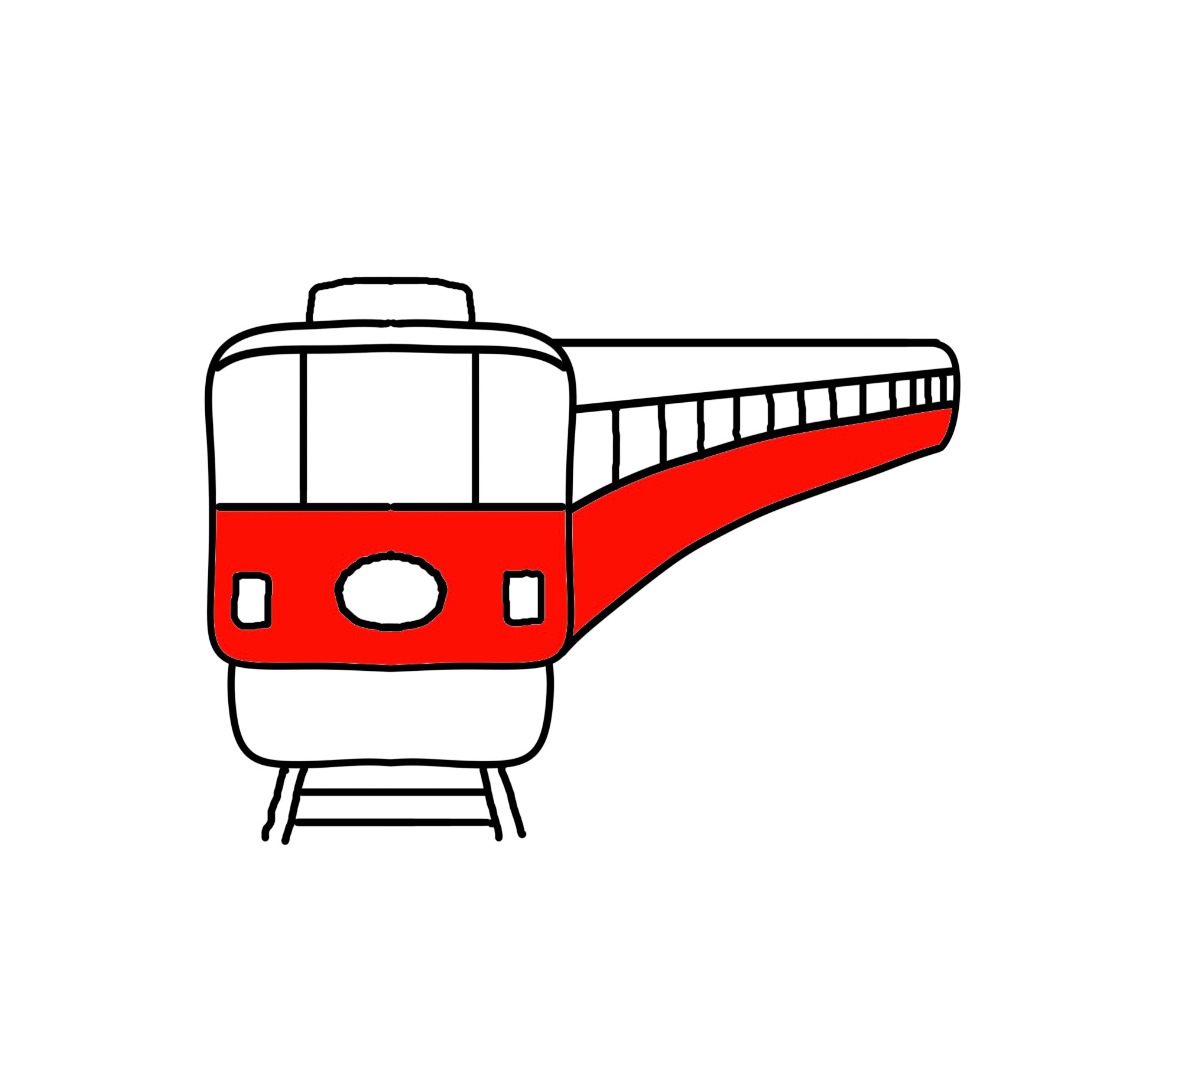 地下鉄がない奈良県でも地下鉄車両は走っている。12月30日は地下鉄記念【奈良県的今日は何の日？】